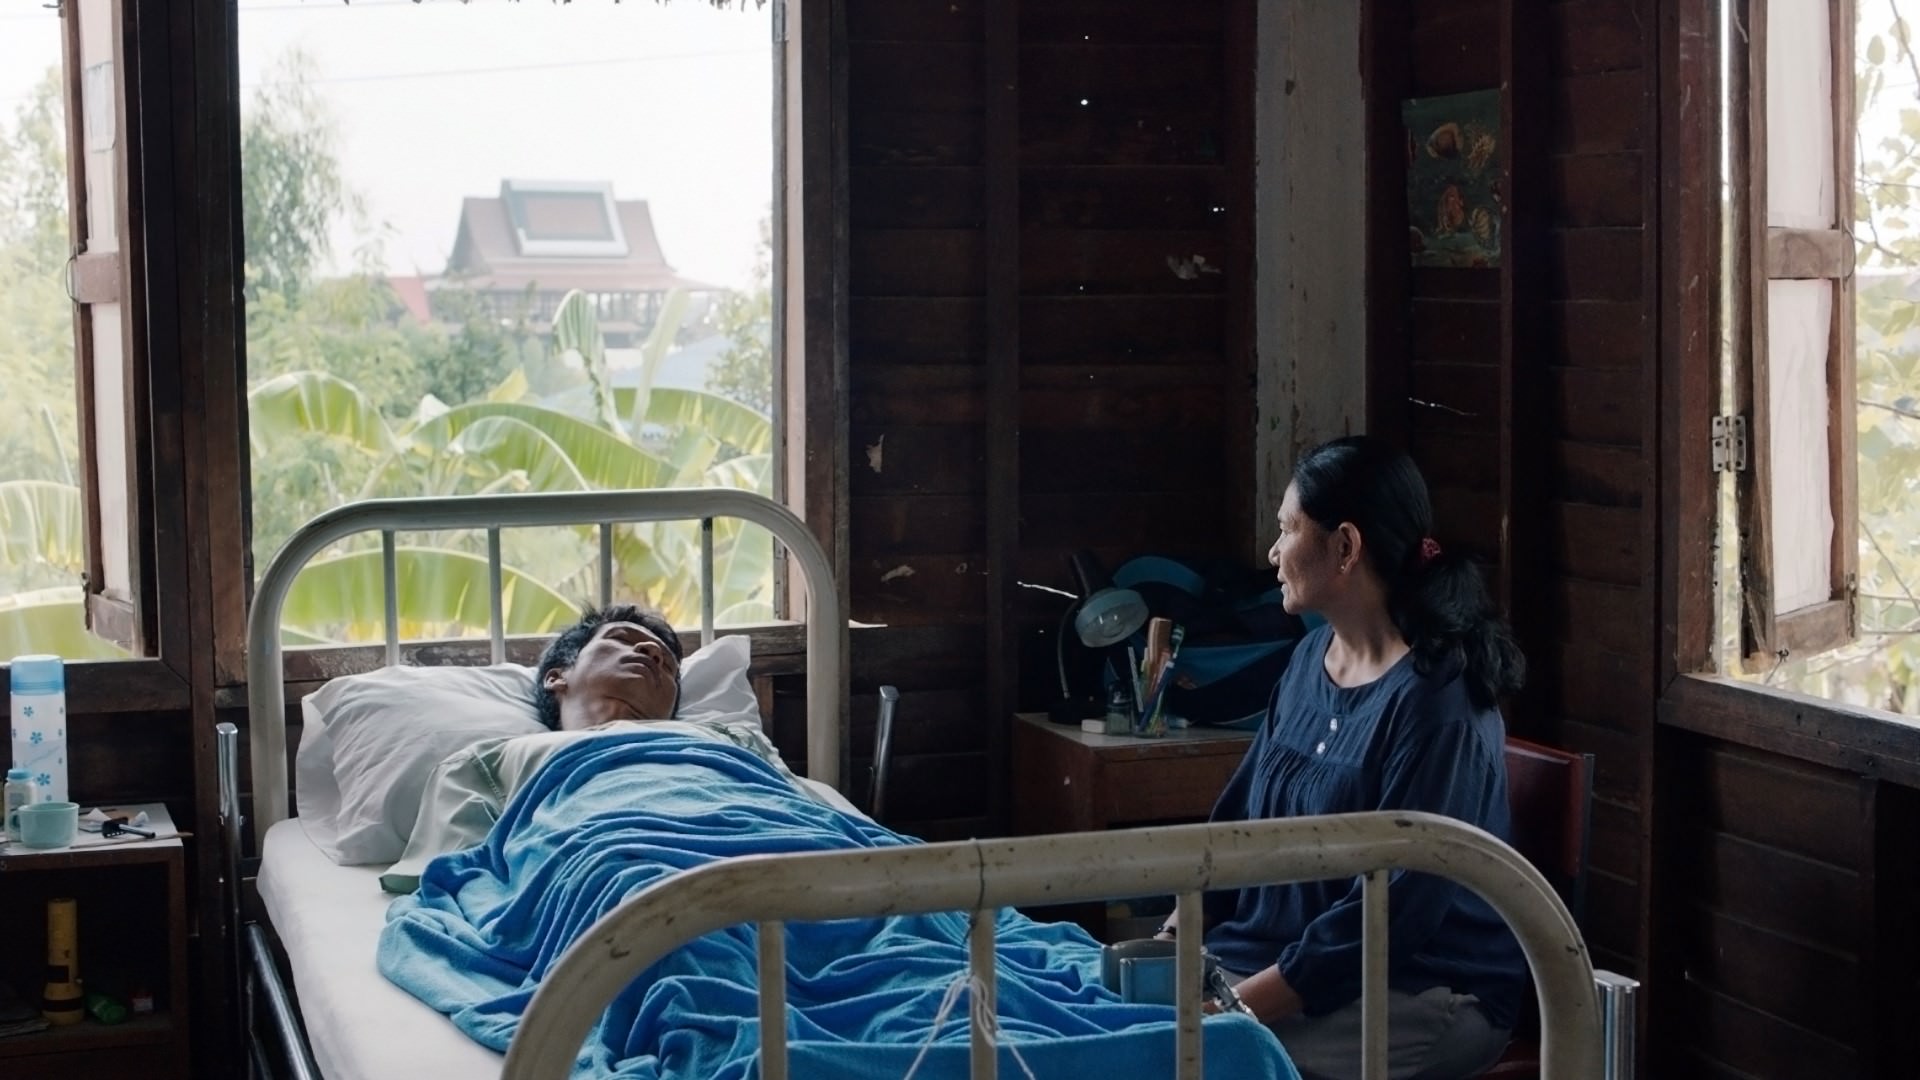 《華麗之墓》泰國名導阿比查邦奇幻之作於坎城首映大獲好評